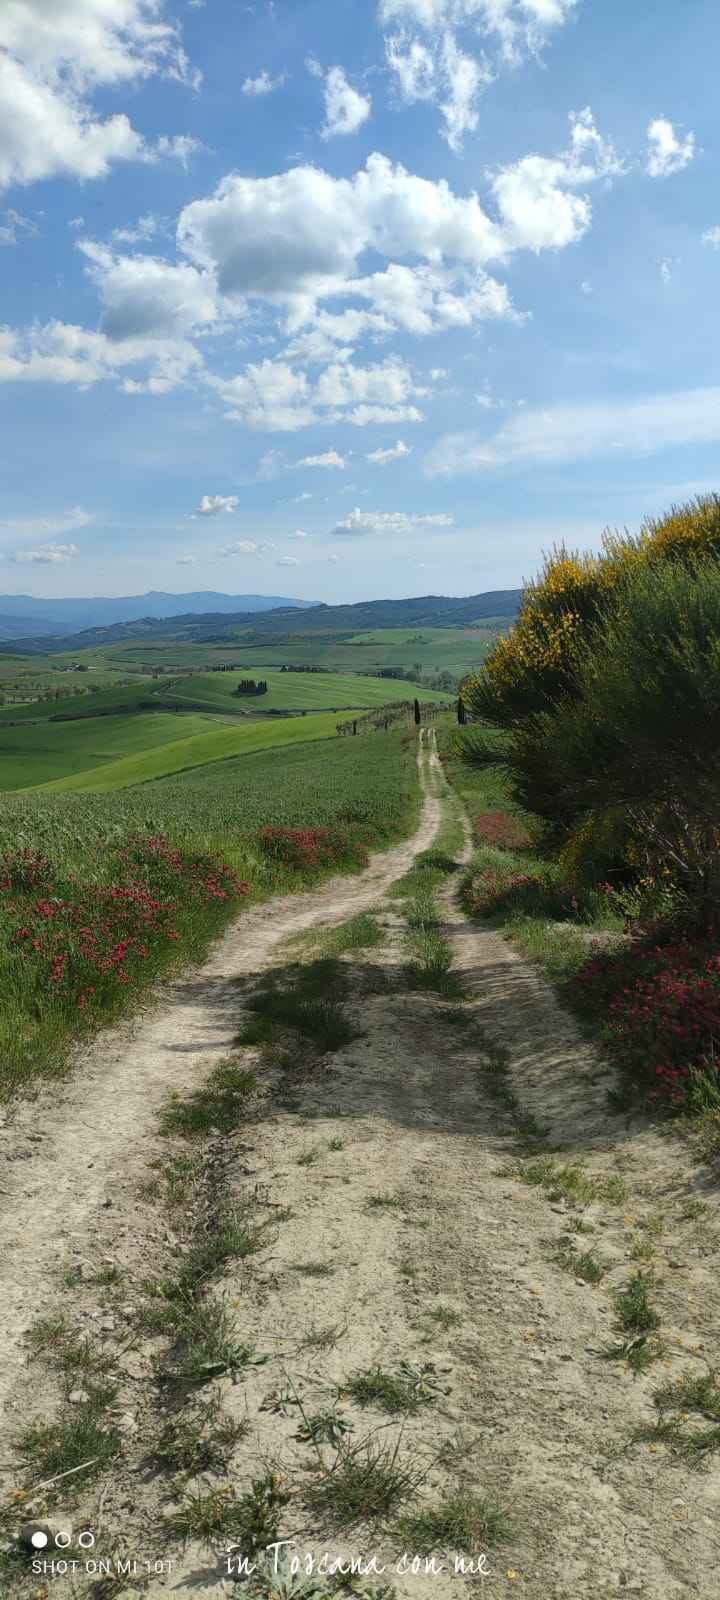 Ricominciamo dal verde delle colline Toscane